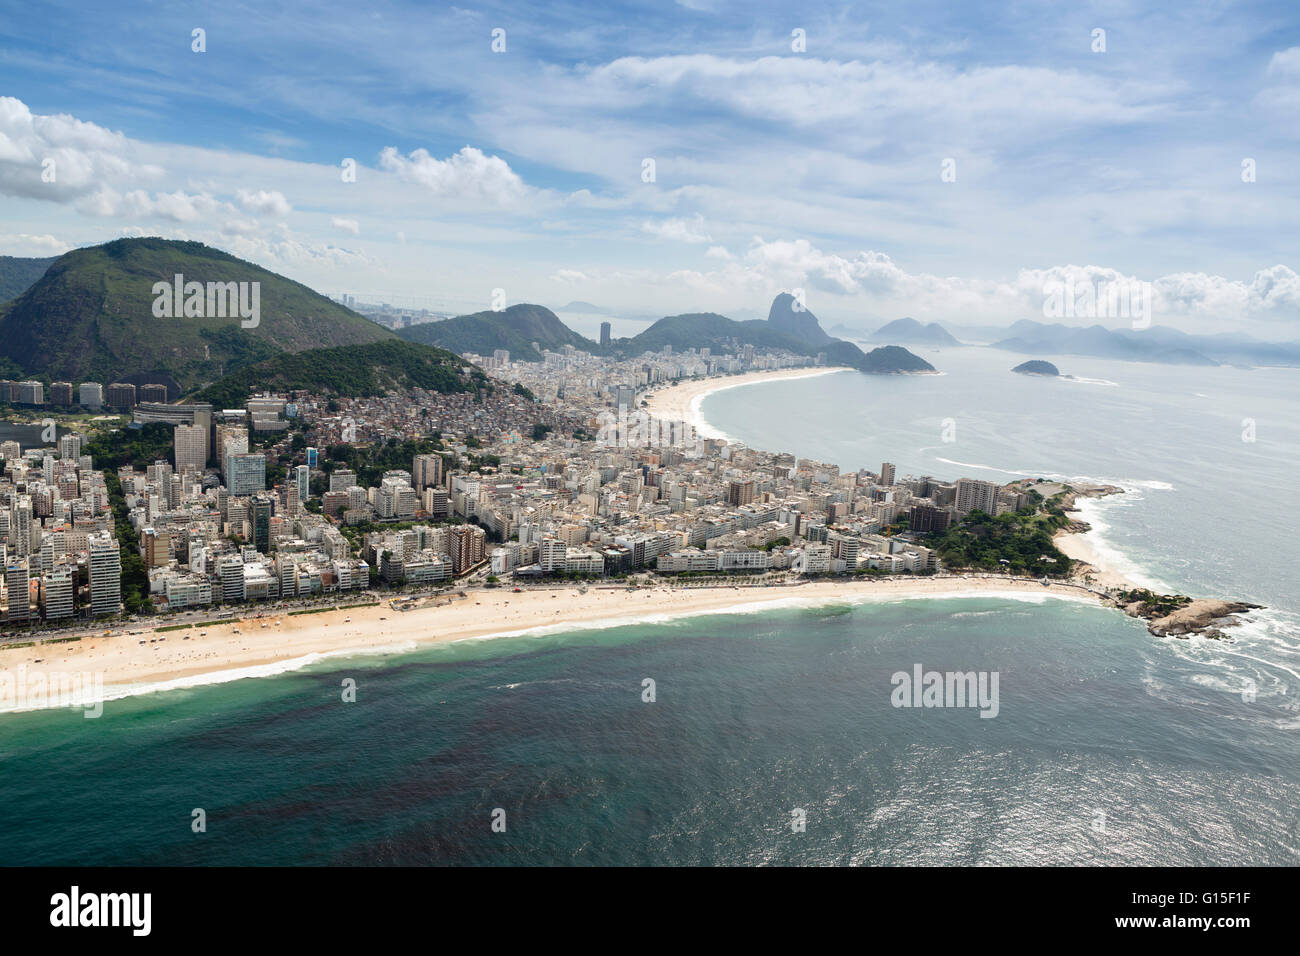 Arpoador and Copacabana beaches and the Arpoador peninsula, Rio de Janeiro, Brazil, South America Stock Photo